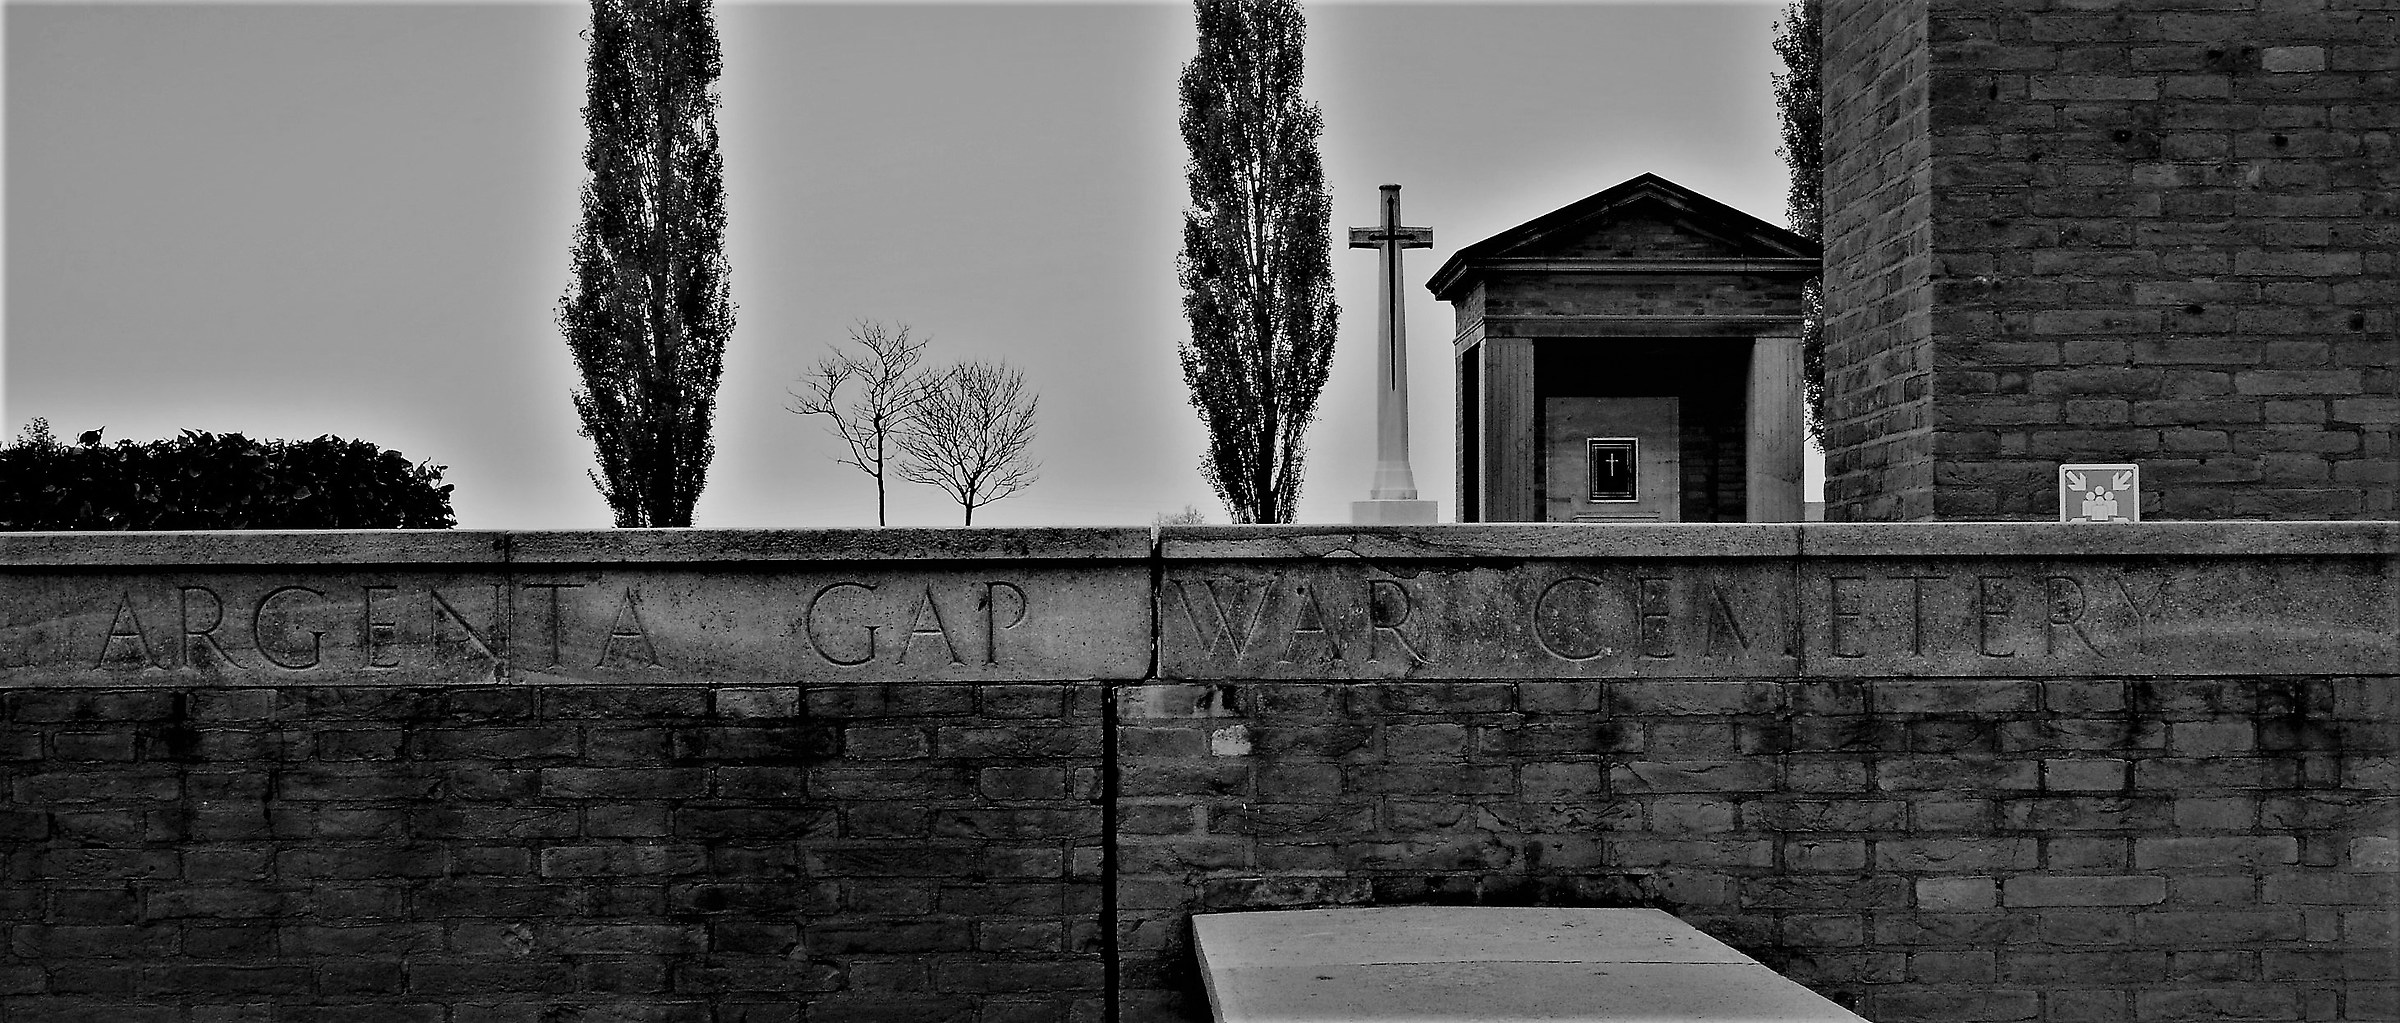 GAP WAR cemitery...